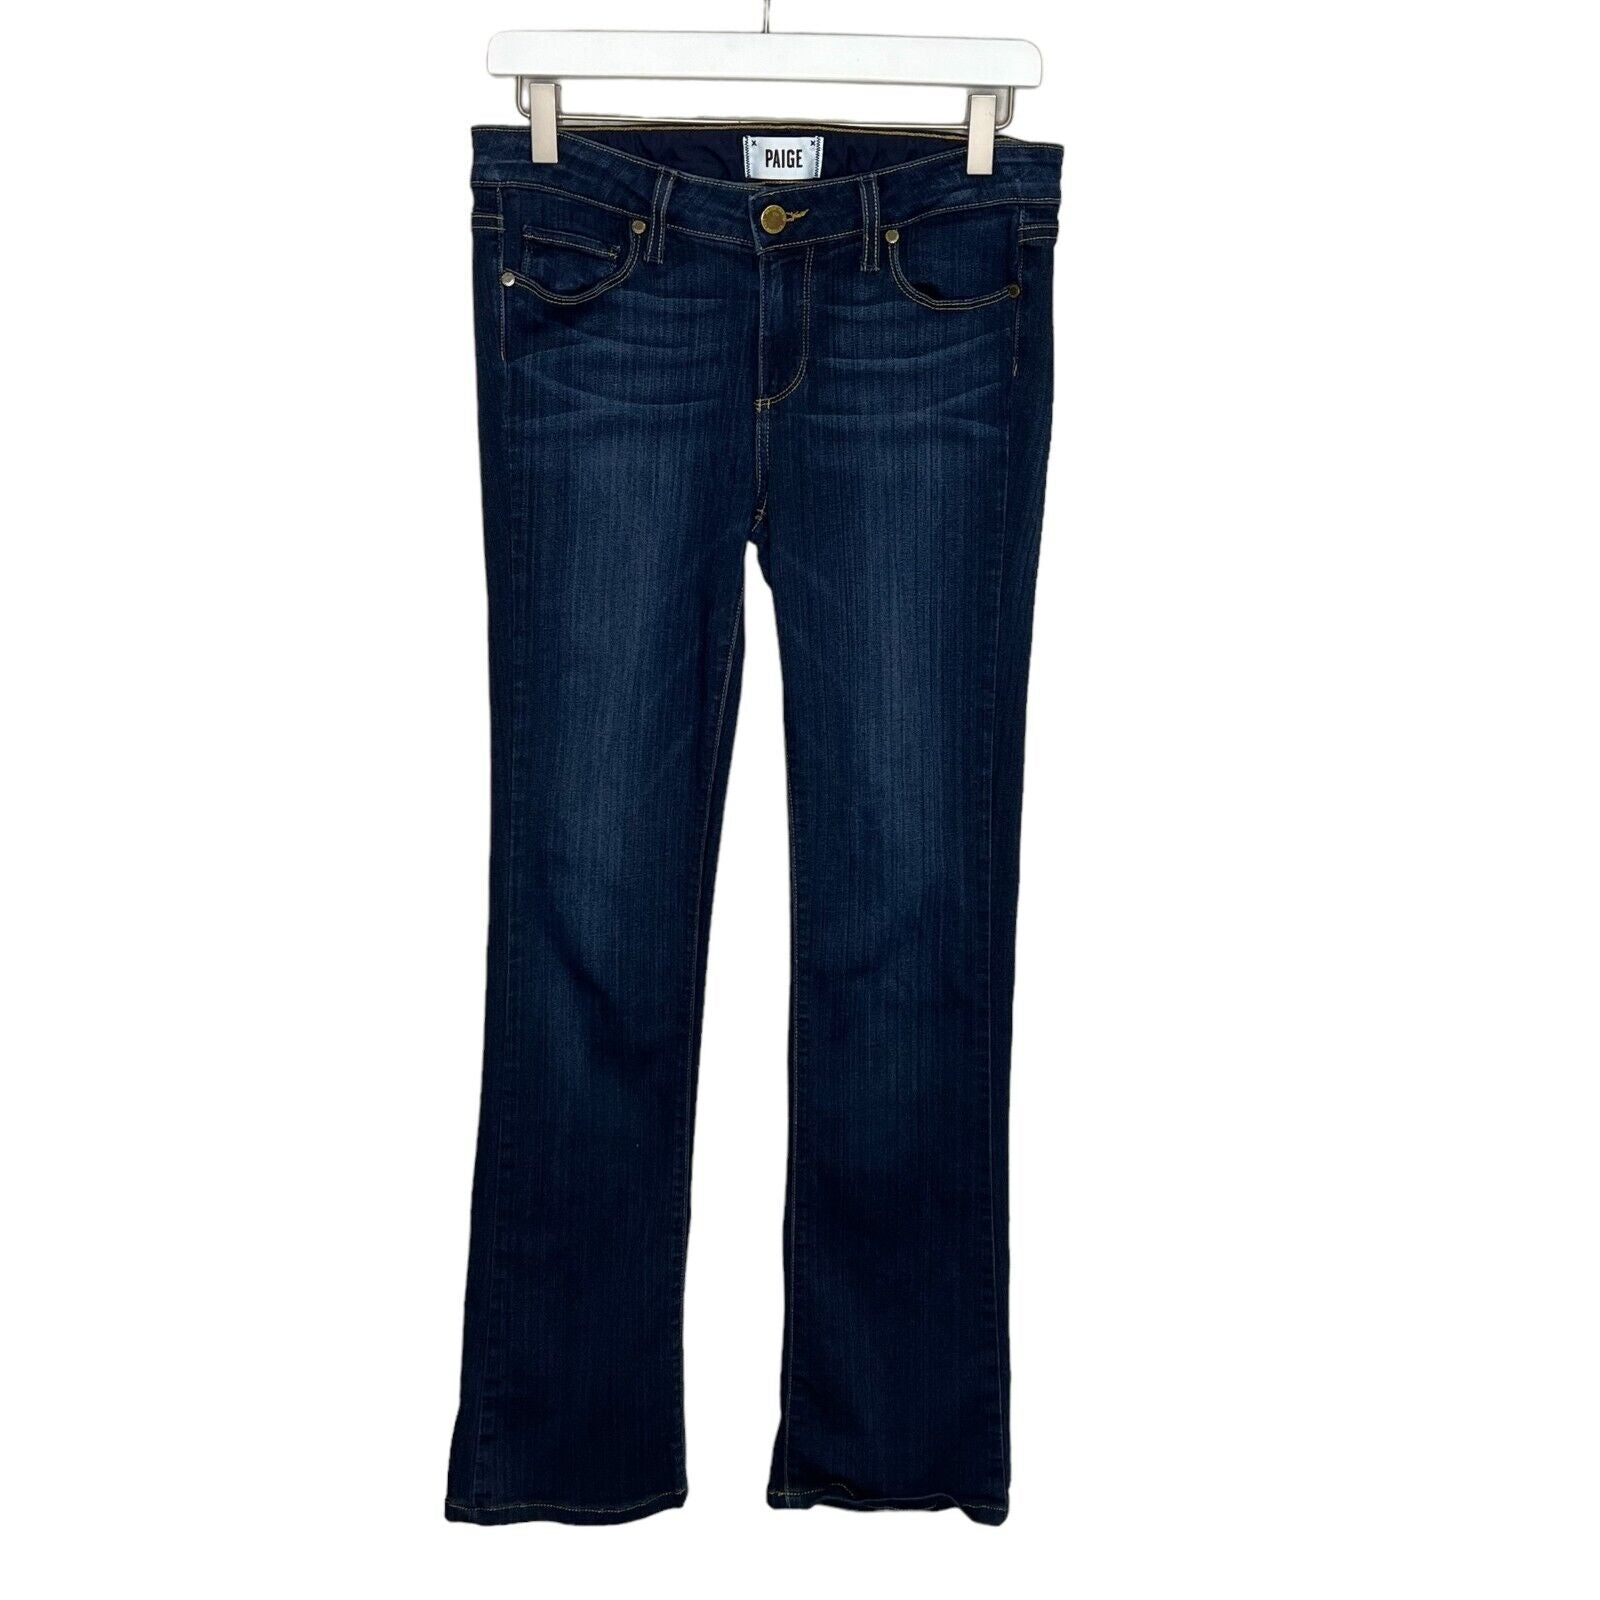 PAIGE Women’s Dark Wash Manhattan Bootcut Jeans Size 28x29